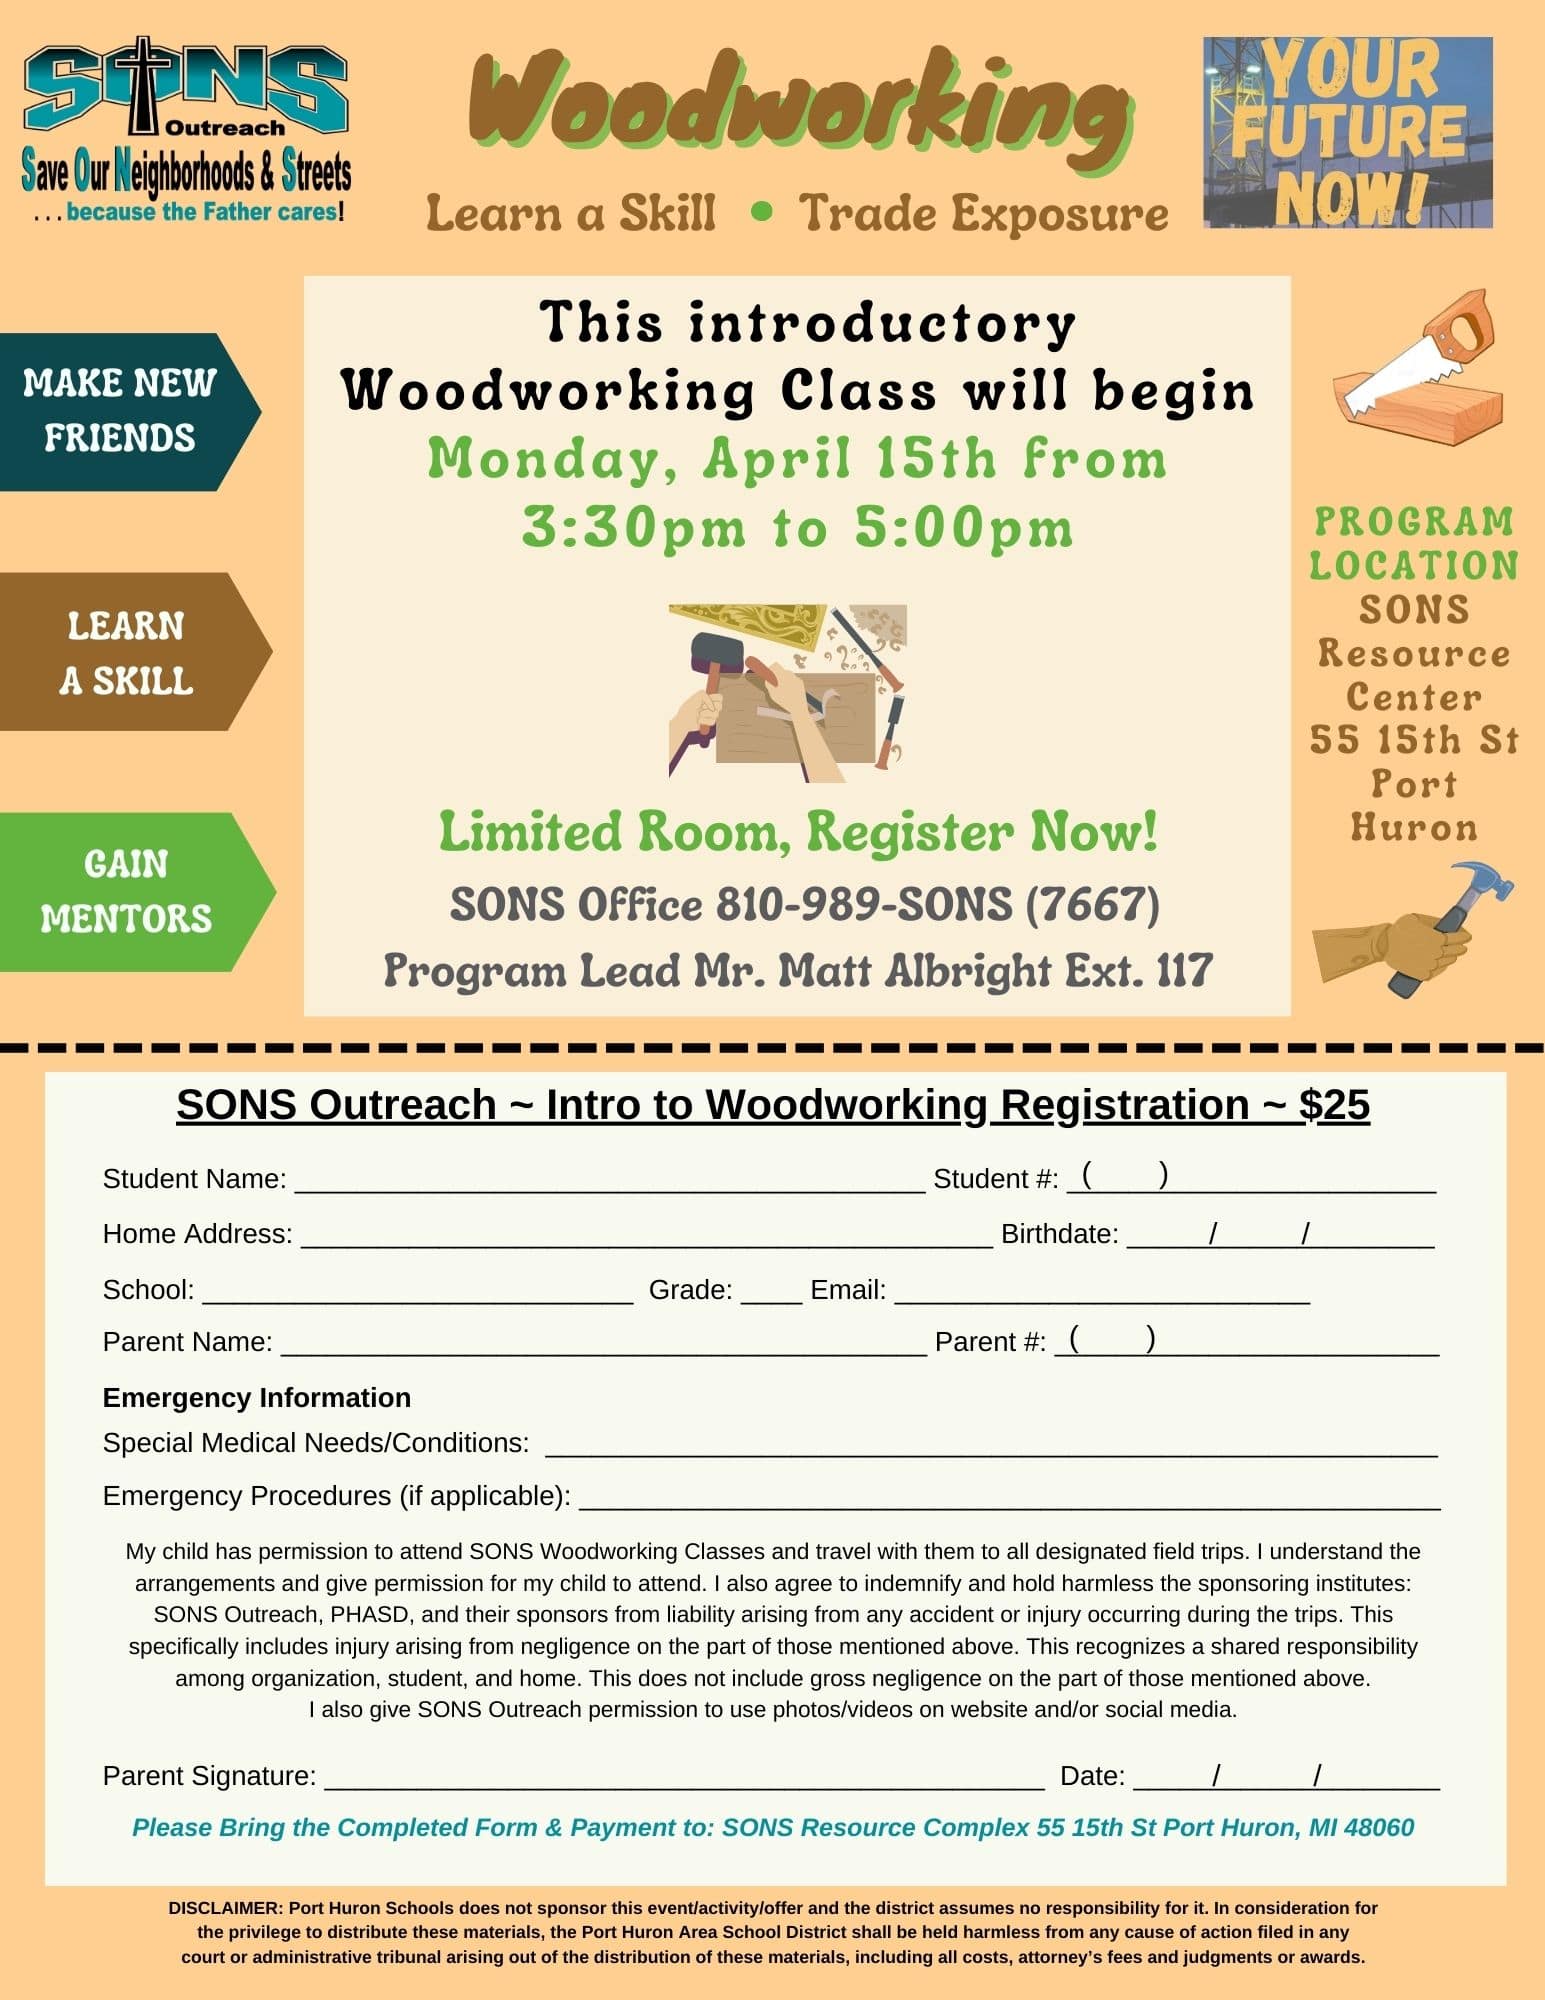 Woodworking Program Registration Form